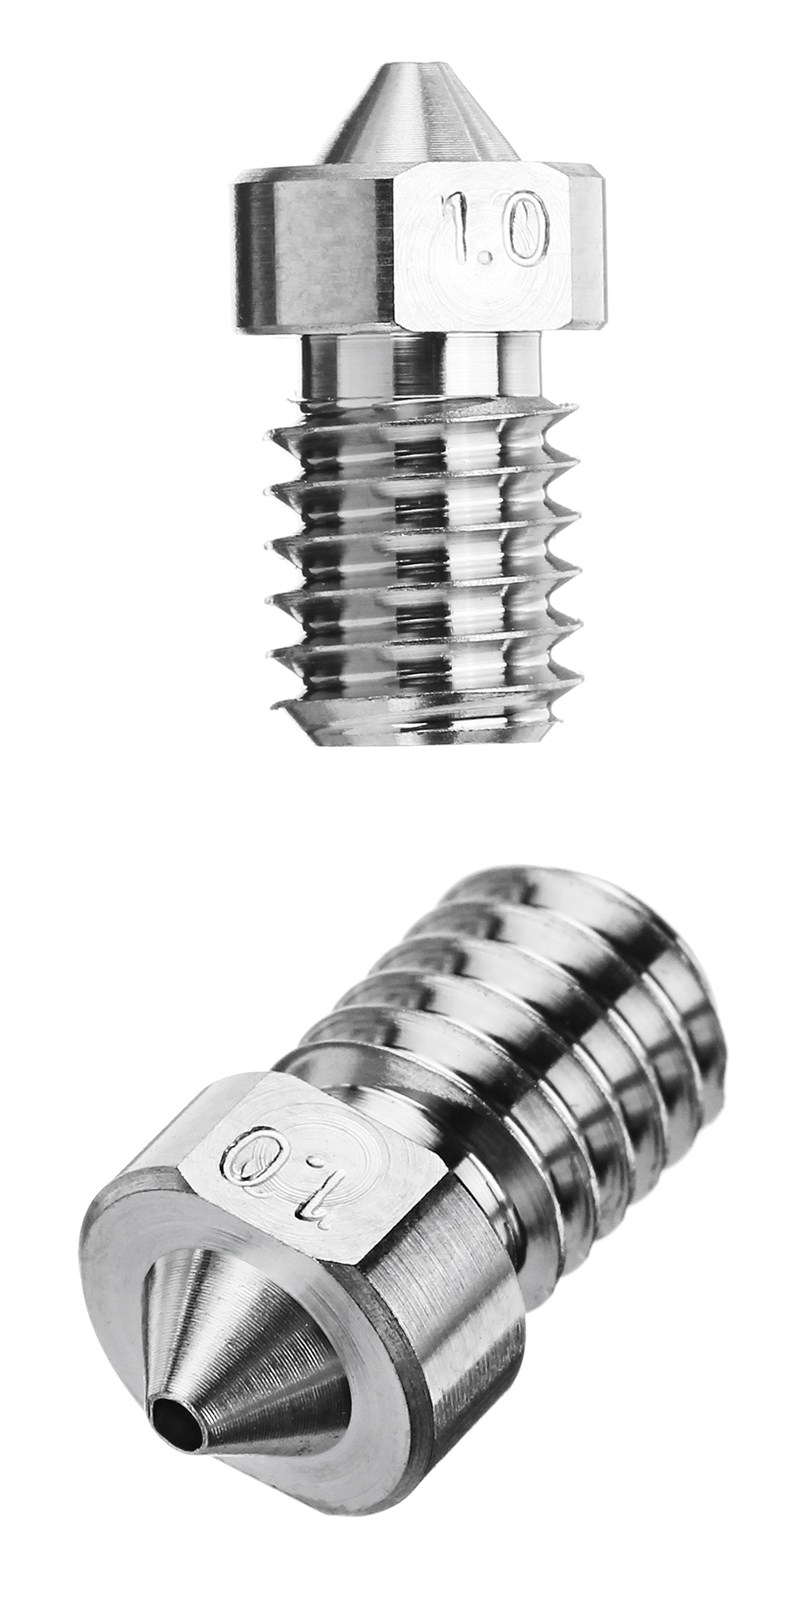 0.3mm/0.4mm/0.6mm/0.8mm/1.0mm Titanium Alloy M6 Thread Nozzle for 3D Printer 18